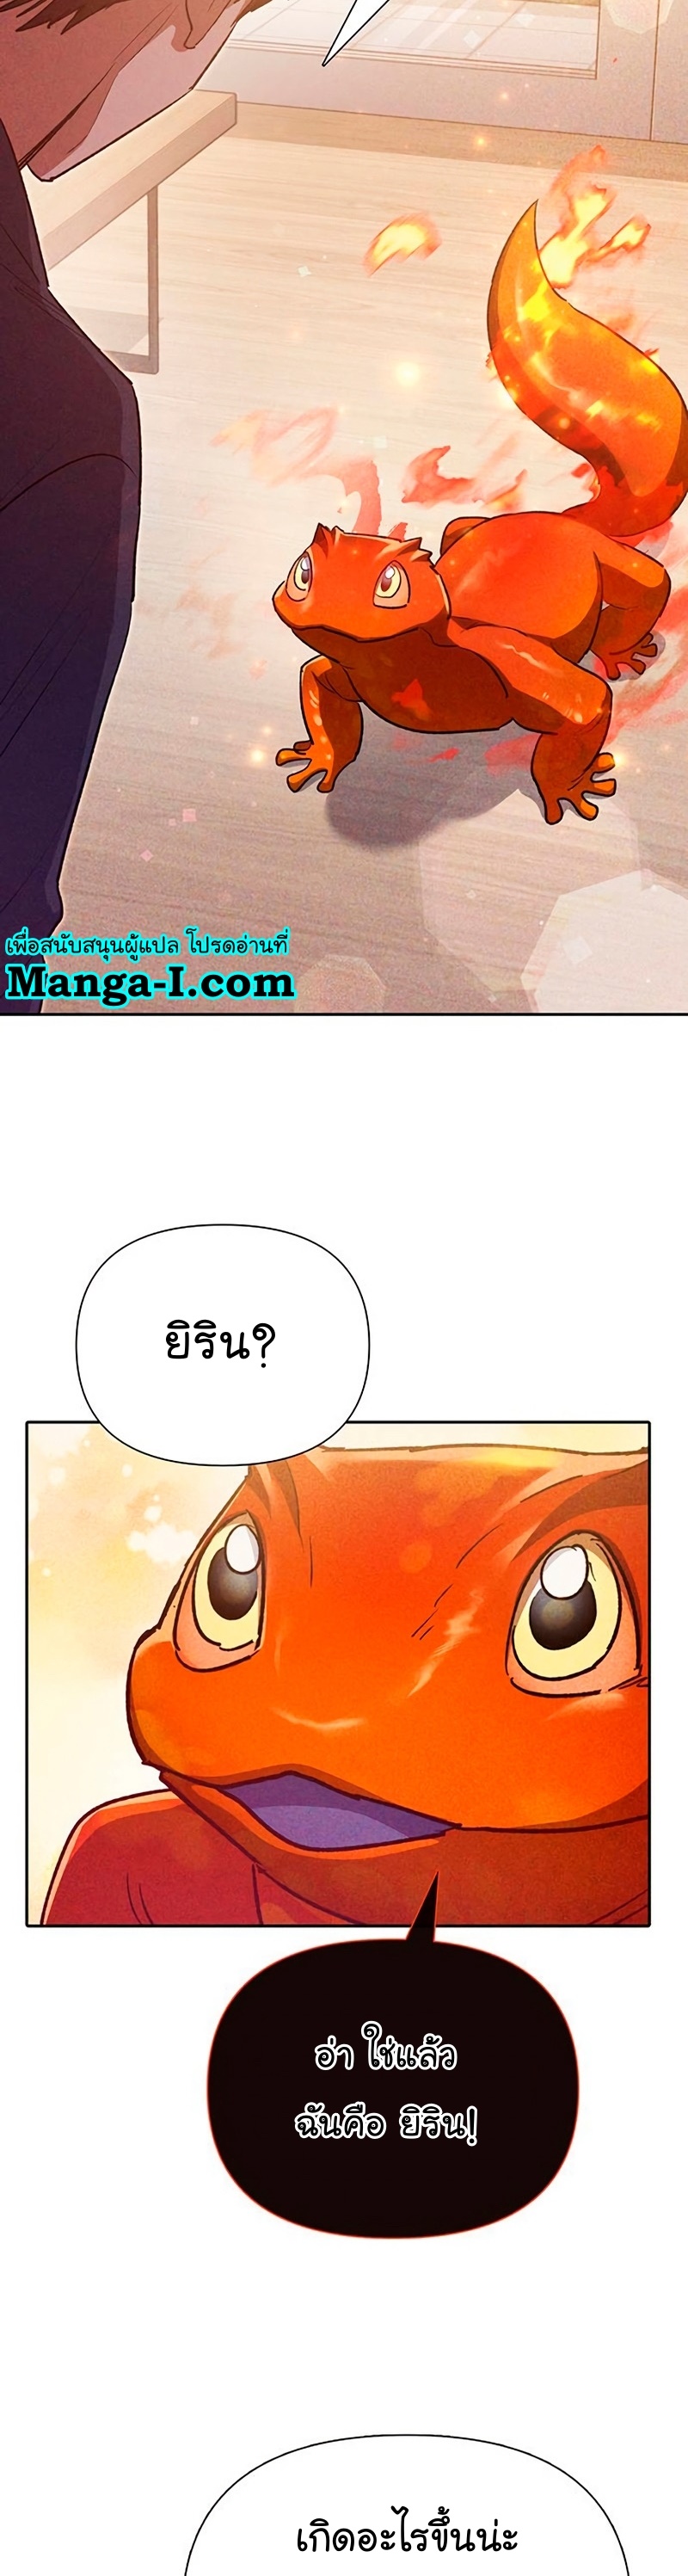 The S Class Manga I Manwha 118 (30)